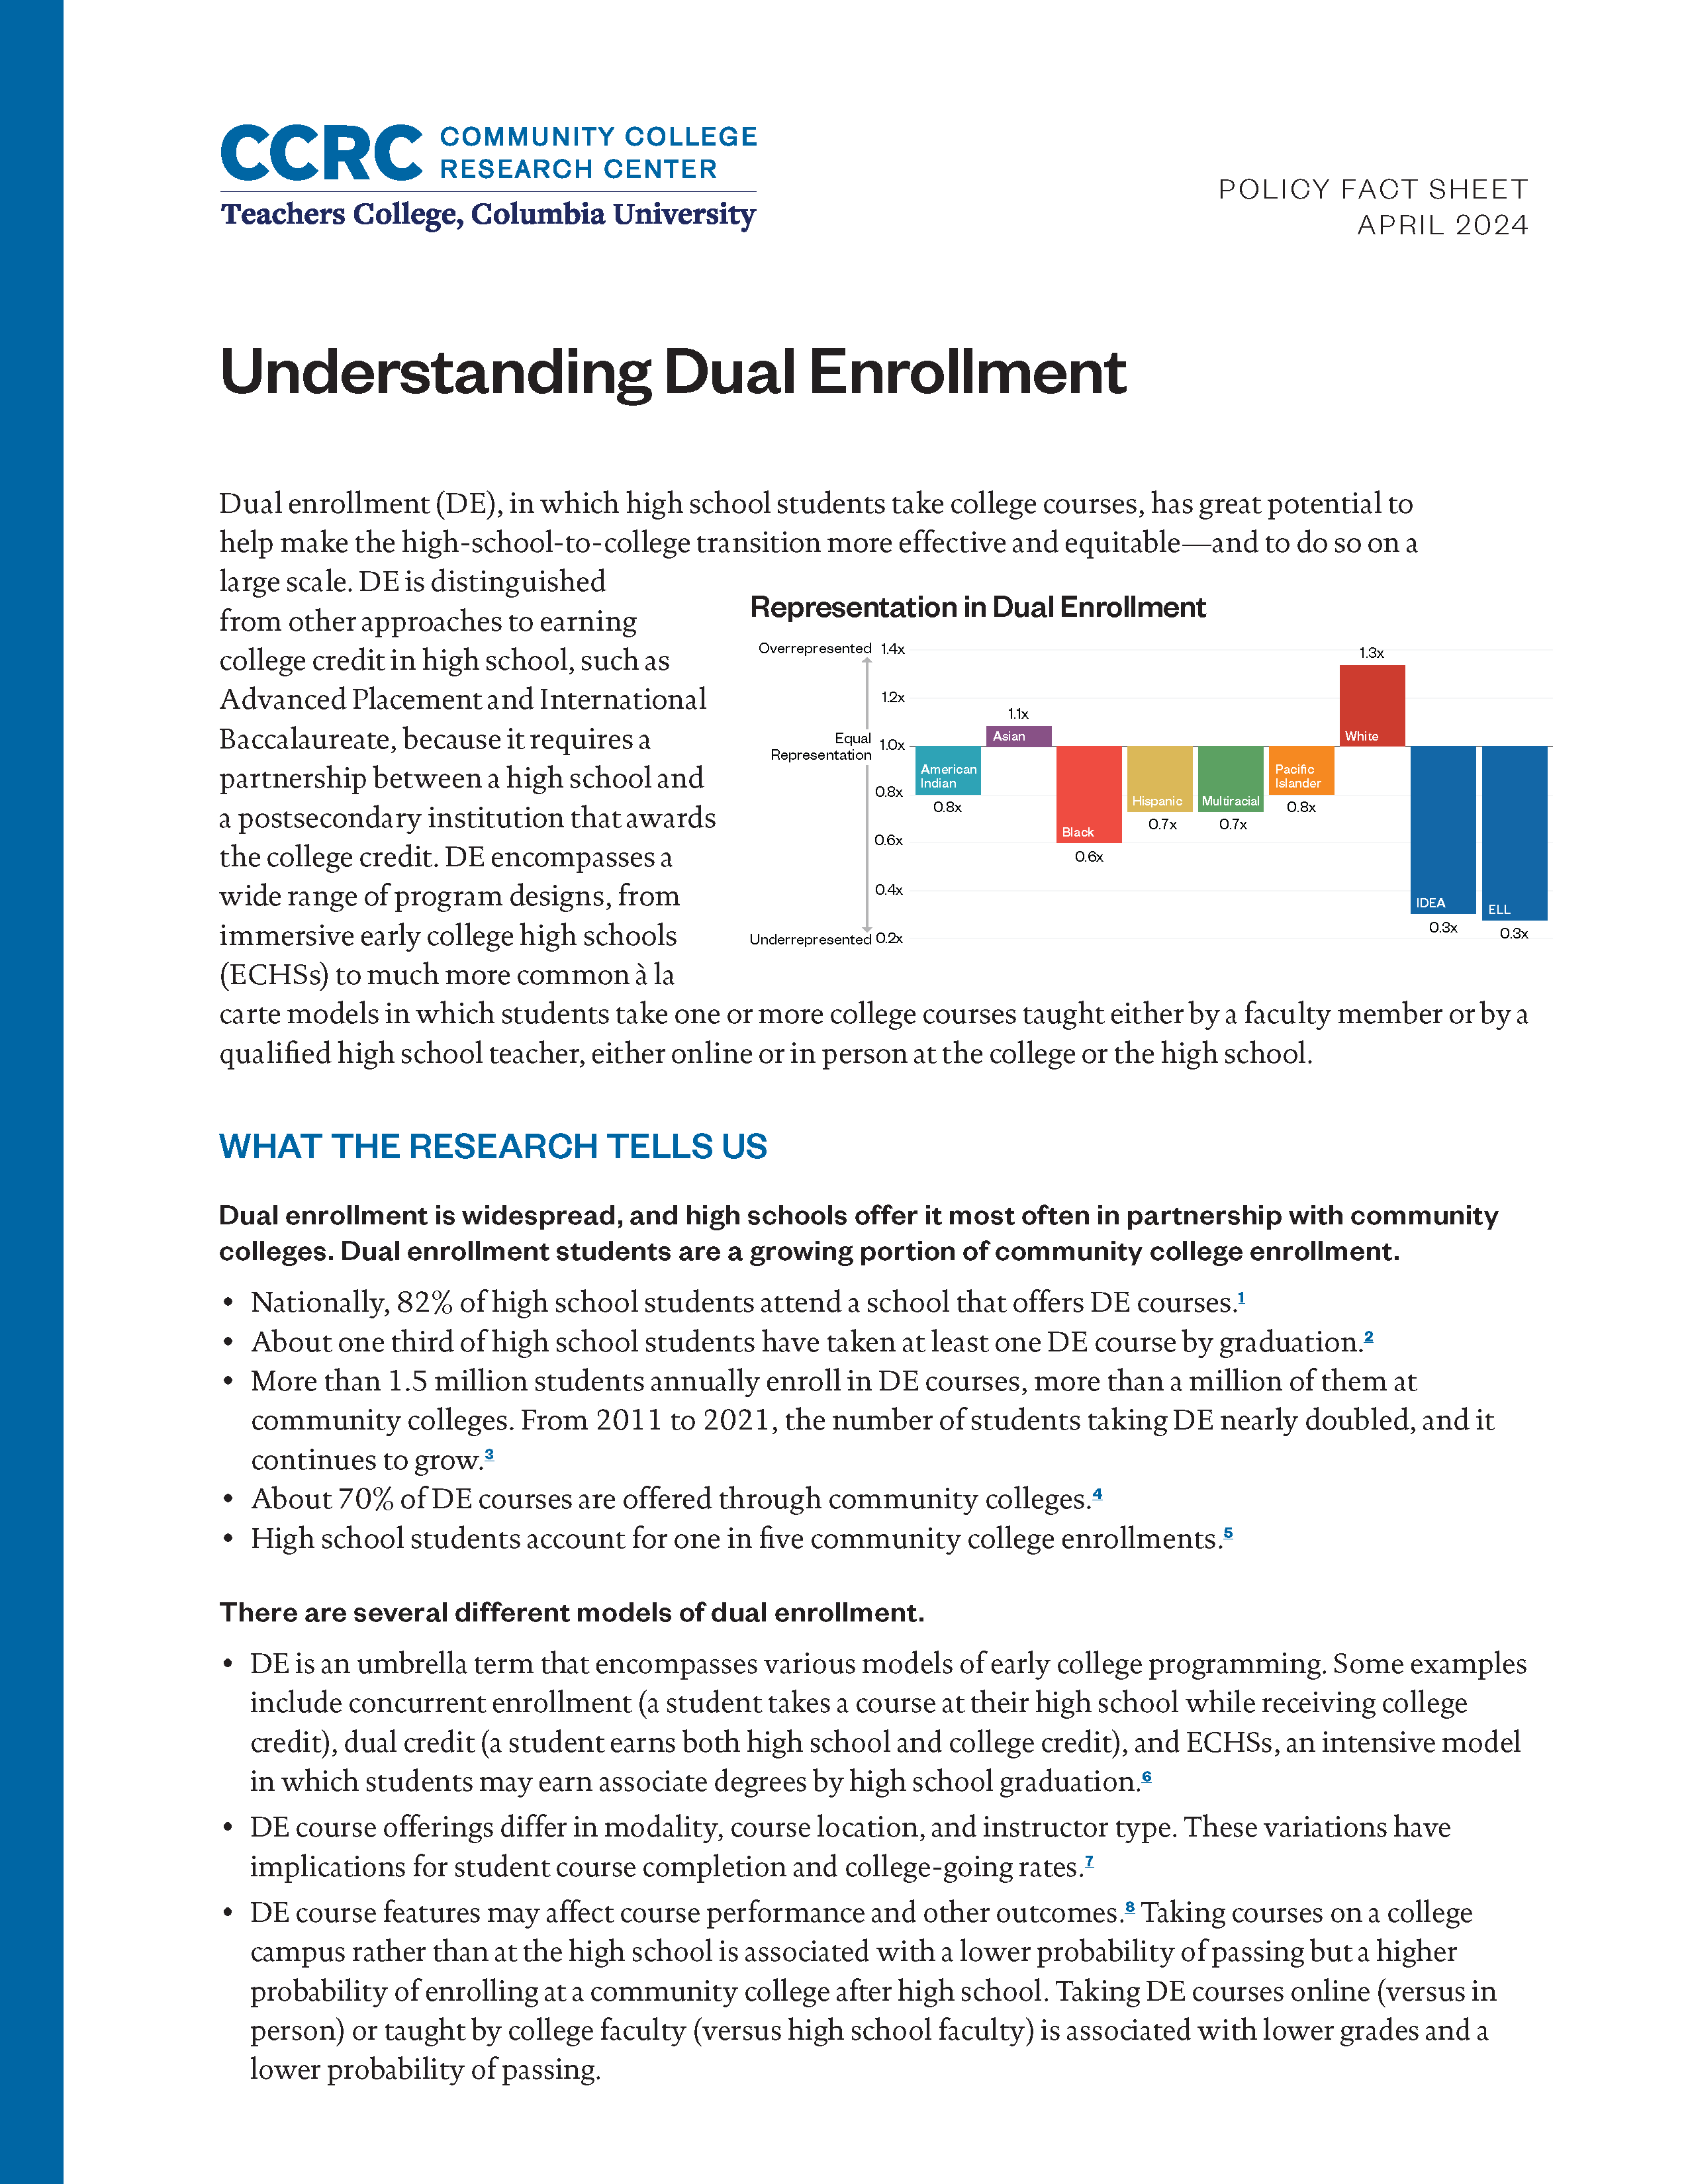 Understanding Dual Enrollment